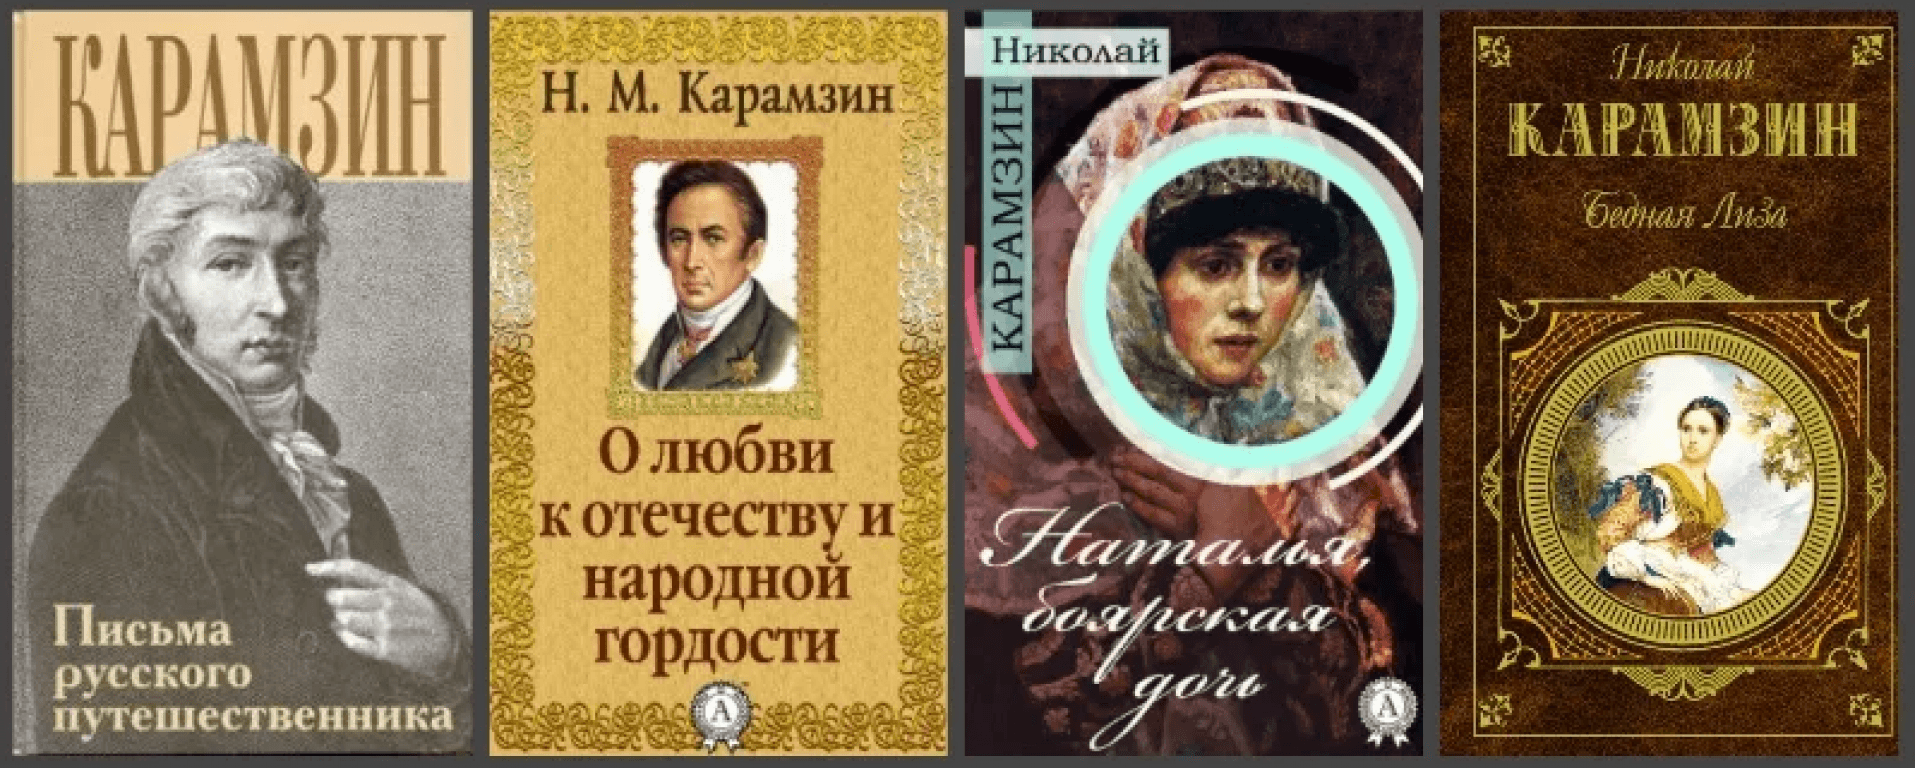 Карамзин Николай Михайлович произведения